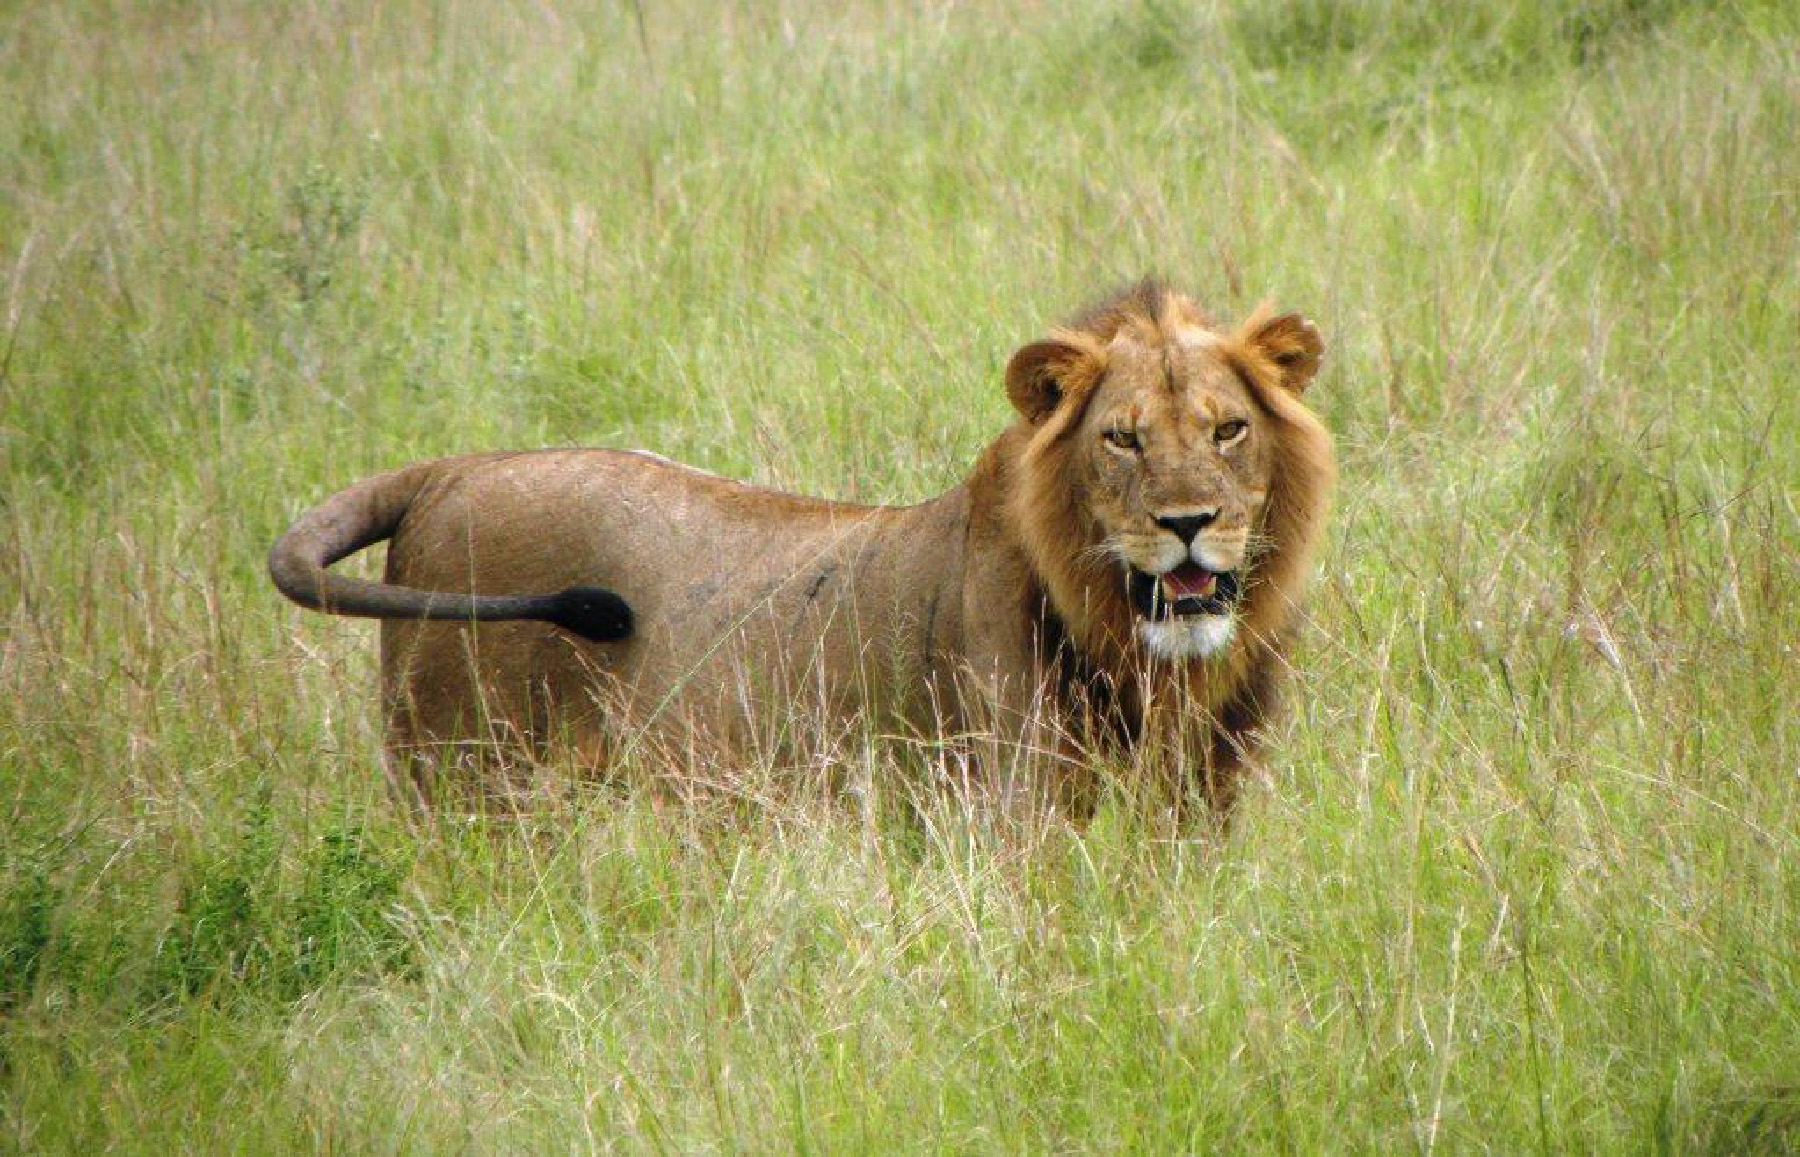 Ảnh chụp một con sư tử đực trong chuyến đi săn ở Phi Châu. (Ảnh: Đăng dưới sự cho phép của anh Fyllis Hockman.)